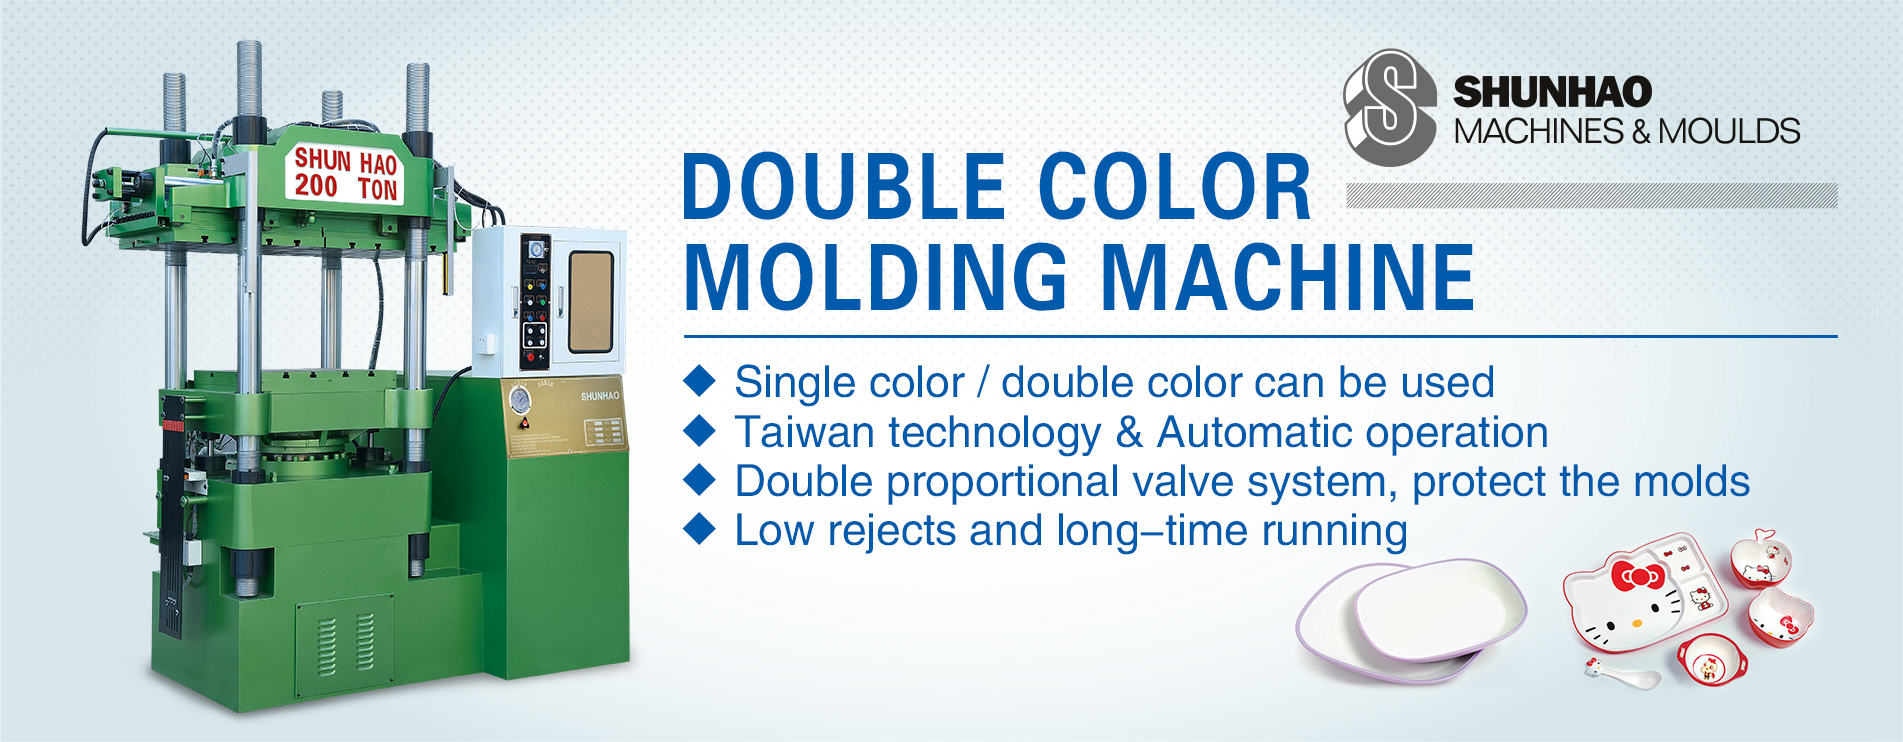 Double Color Molding Machine